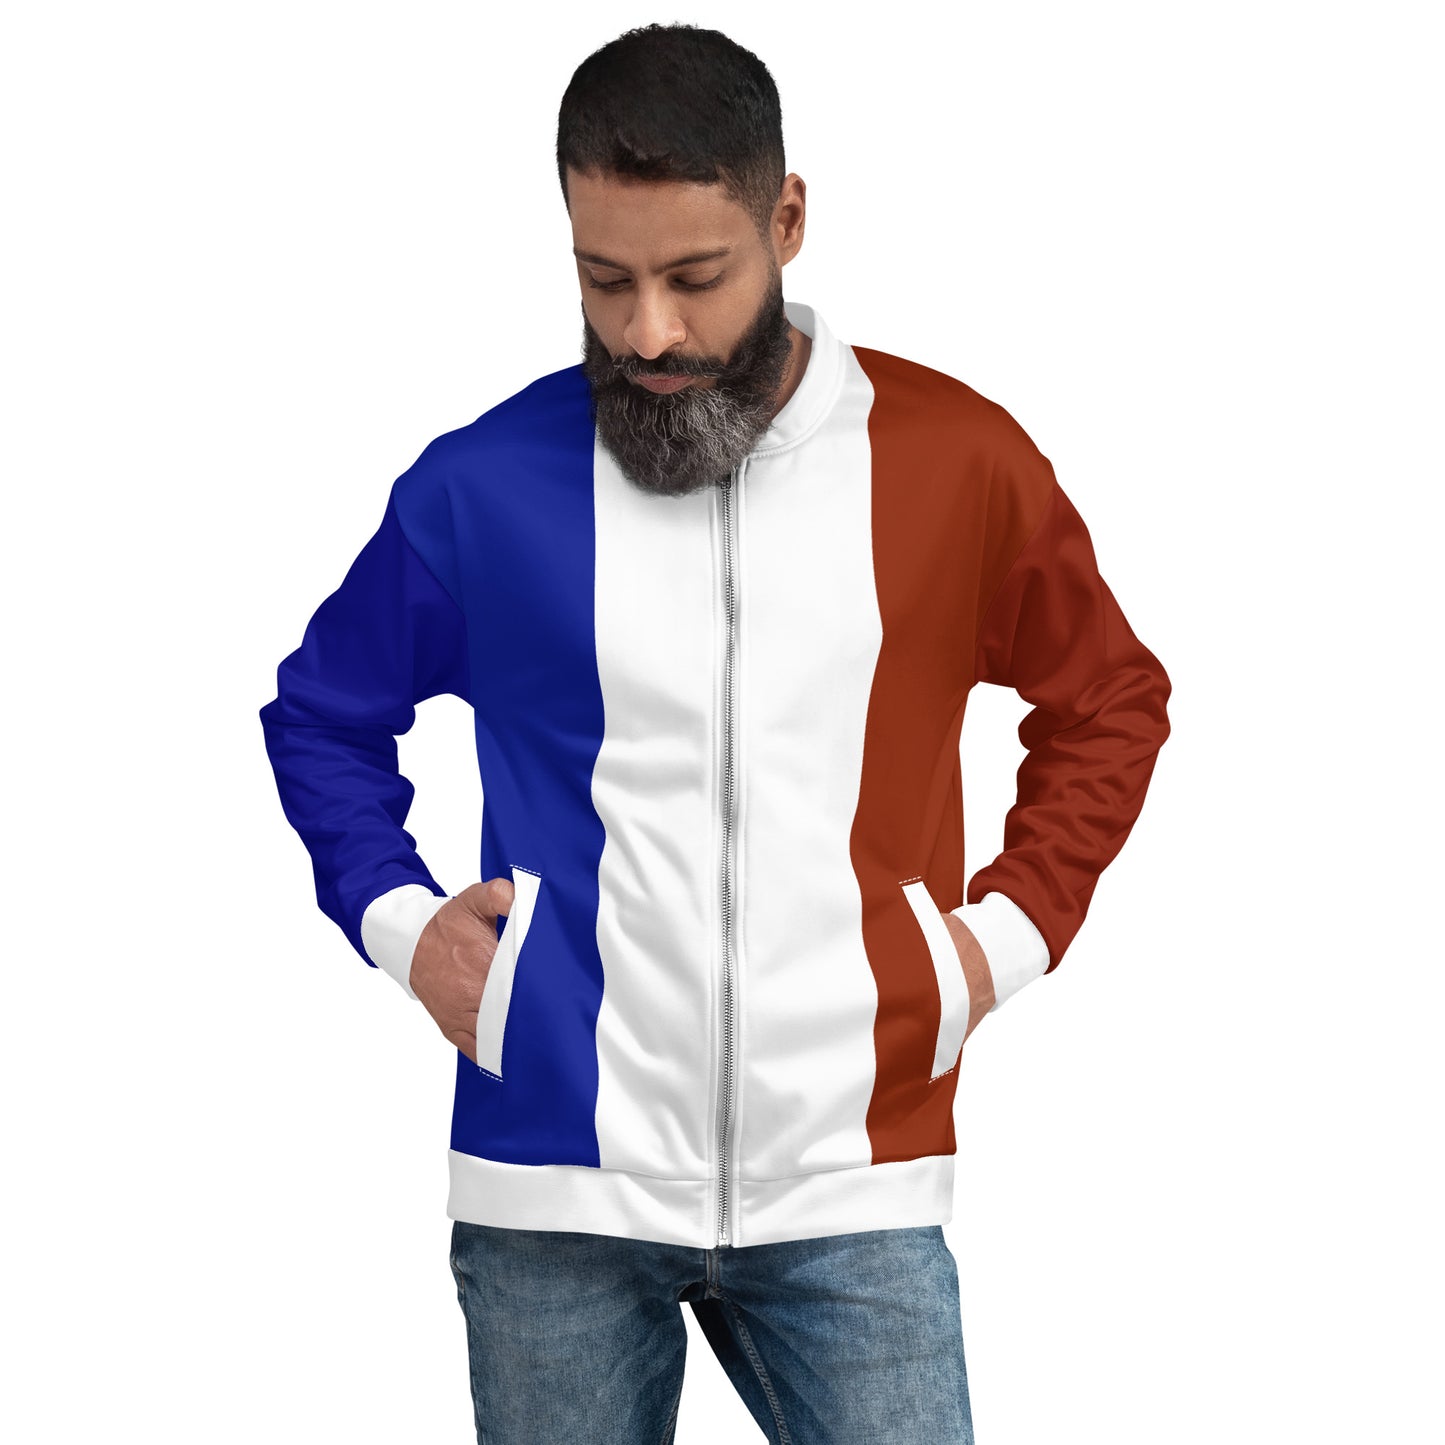 French Jacket / Bomber Jacket With France Flag Colors / Unisex Clothing